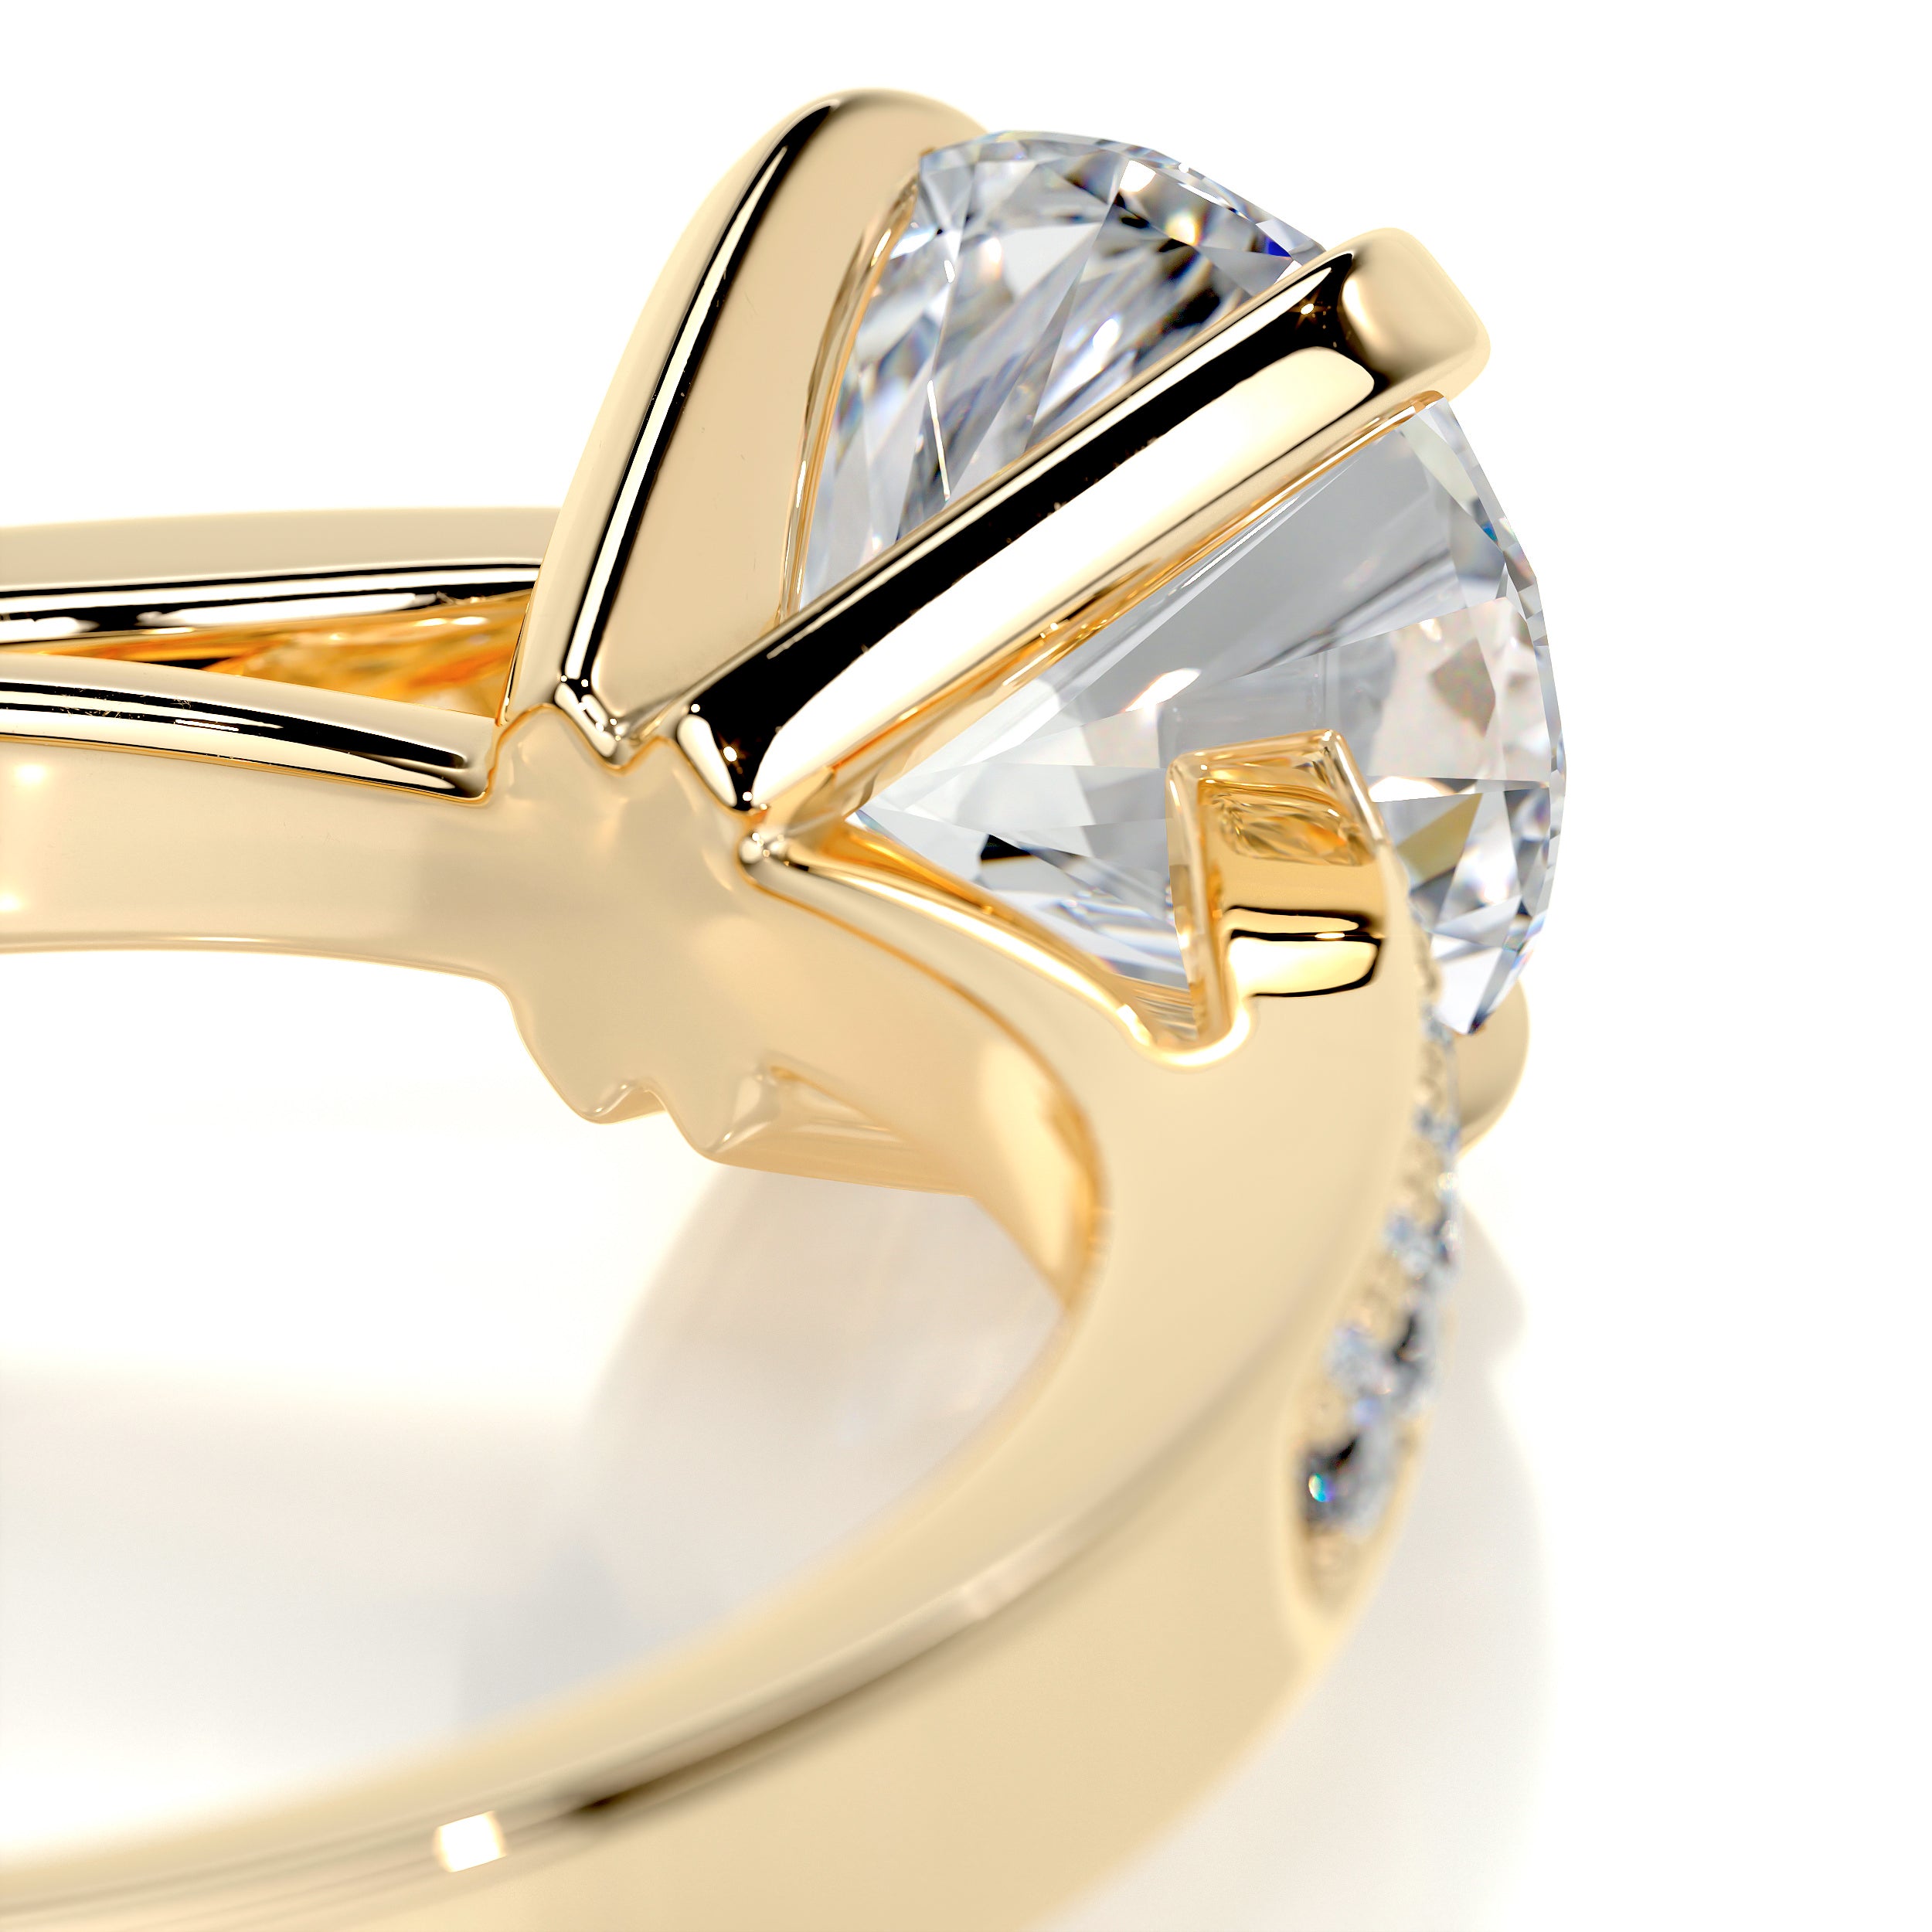 Margaret Diamond Engagement Ring   (1.35 Carat) -18K Yellow Gold